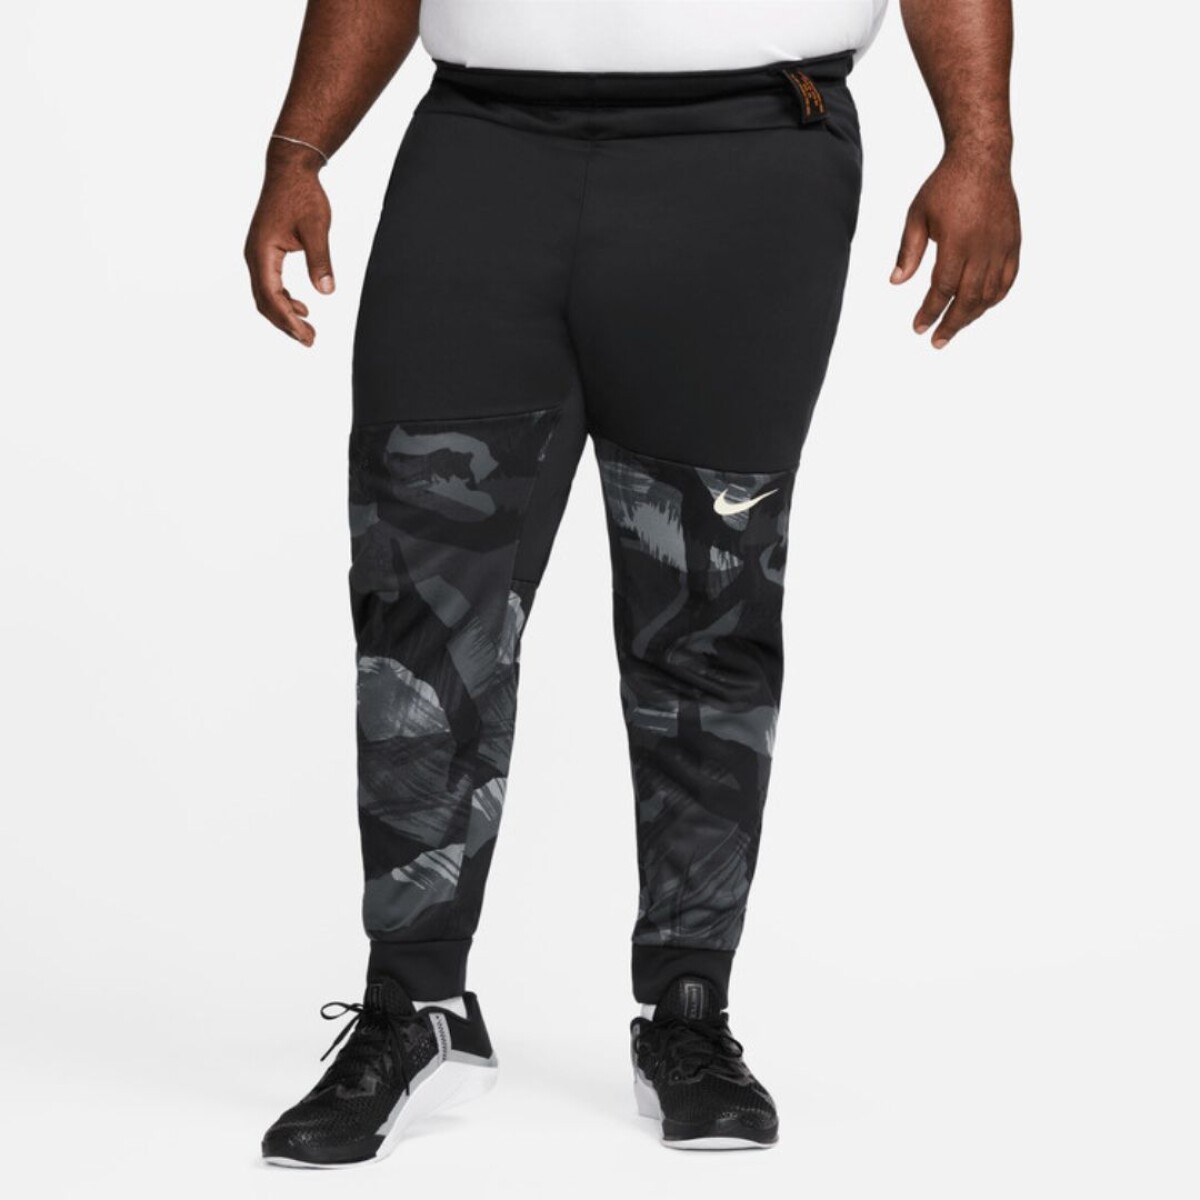 Pantalon Nike Training Hombre Taper Camo Black - S/C 